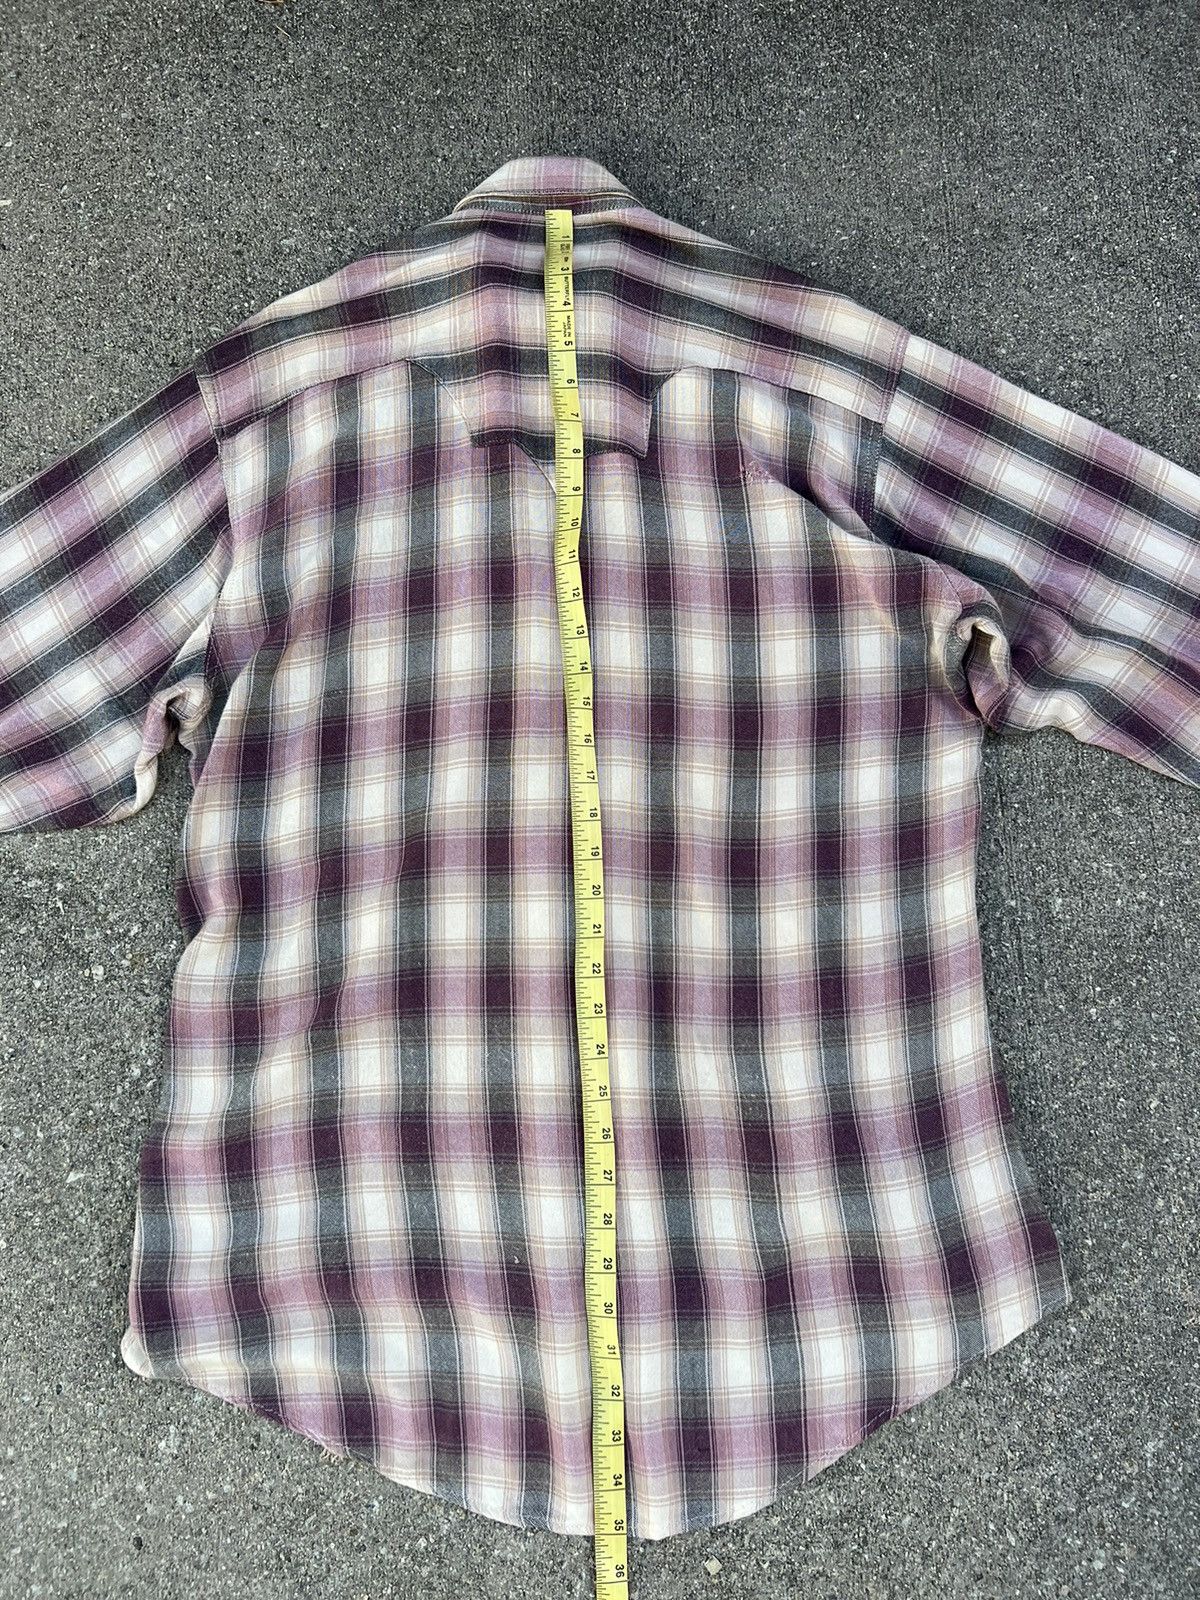 Vintage Distress VTG Rockmount Ranch Wear Rayon Plaid Western Shirt Size US M / EU 48-50 / 2 - 5 Thumbnail